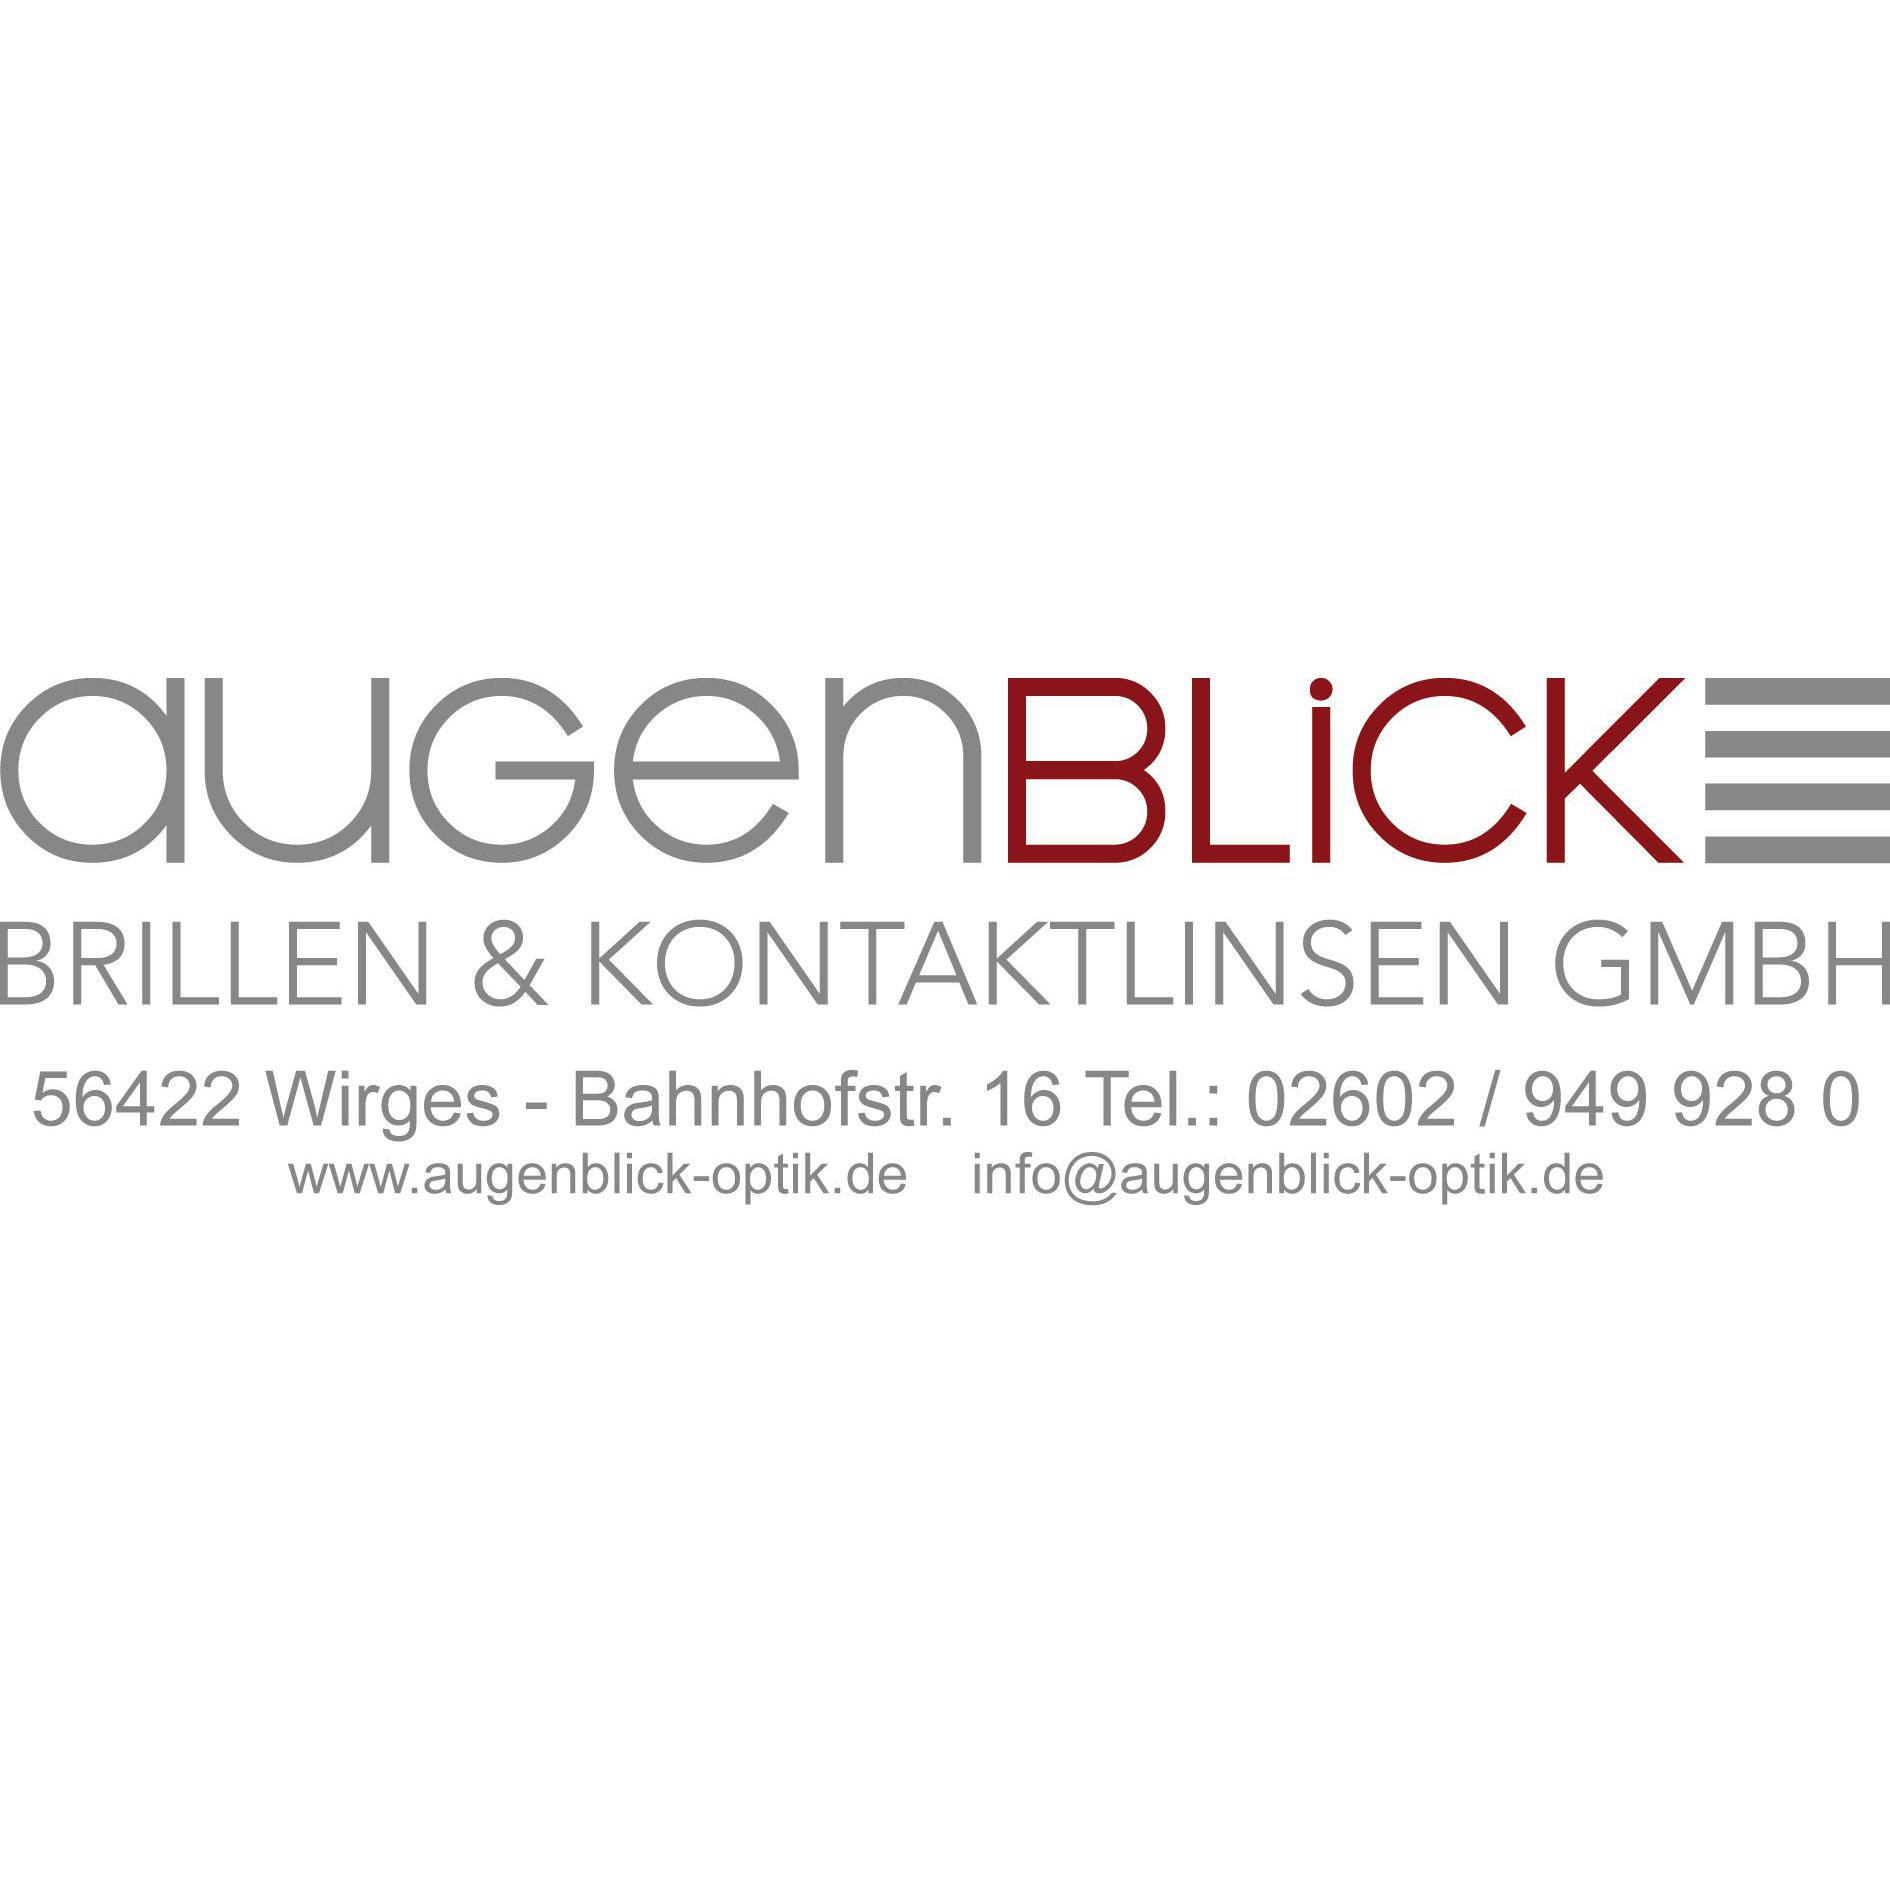 Augenblick Brillen Kontaktlinsen GmbH Logo